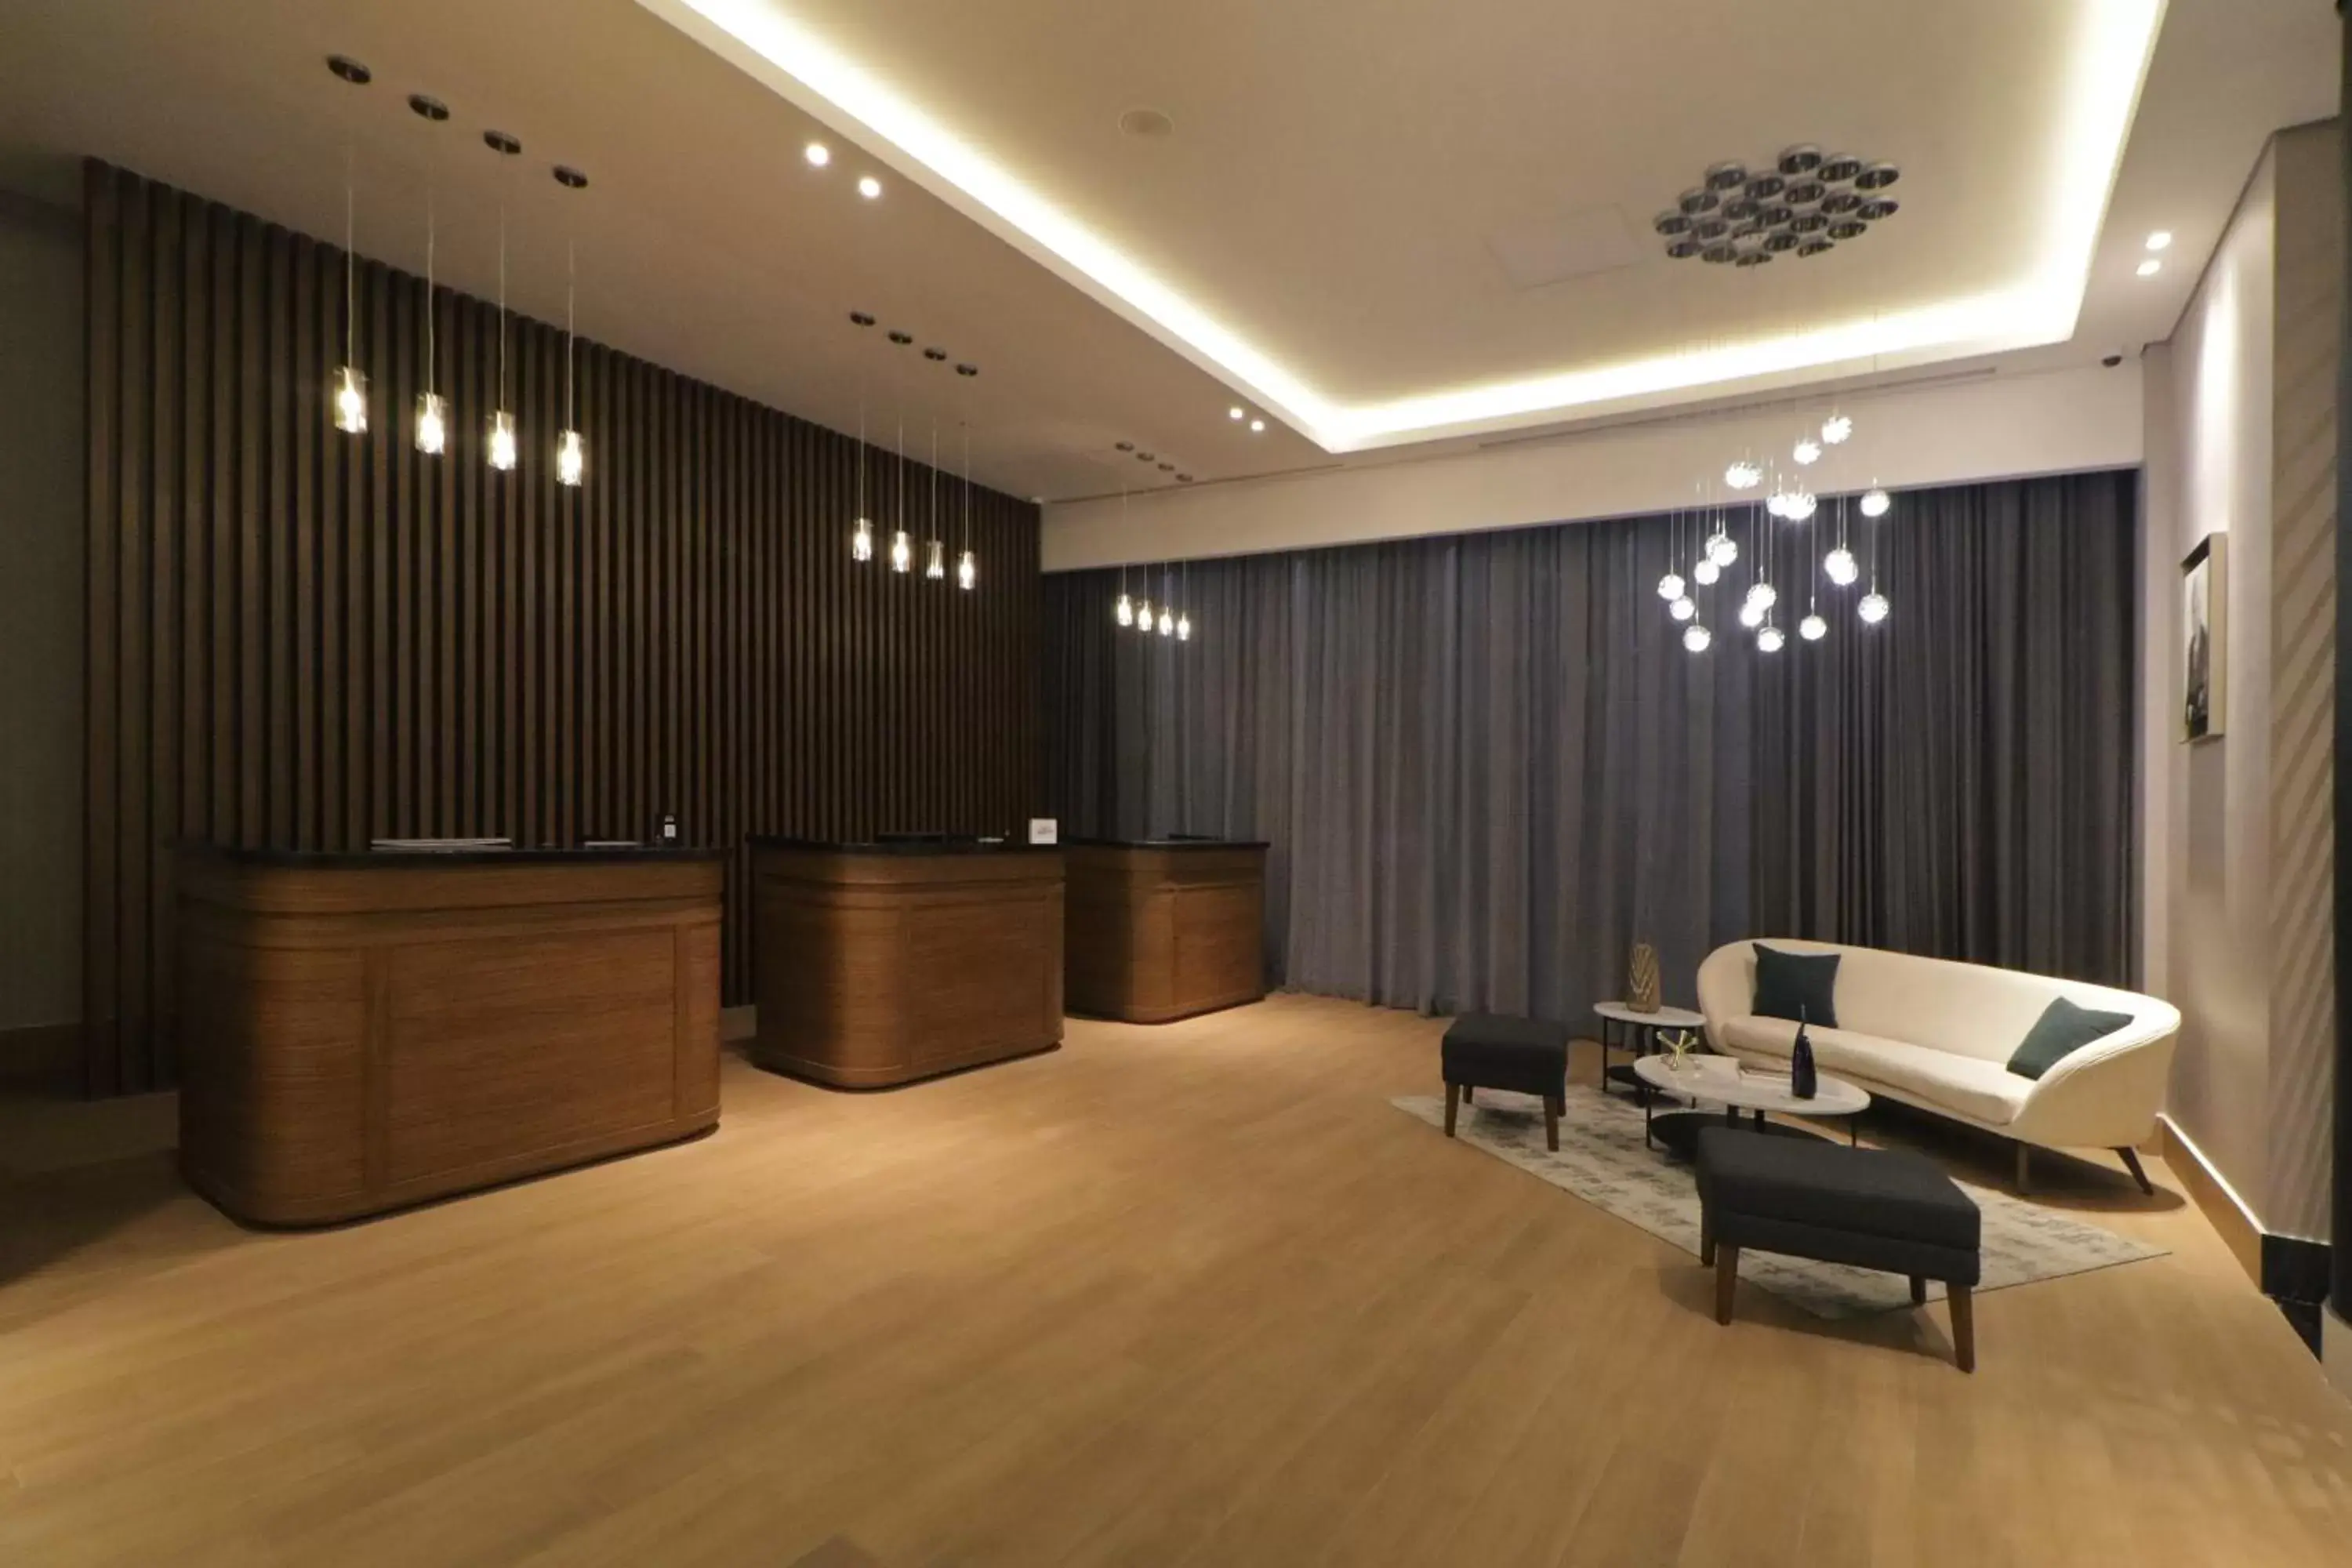 Lobby or reception, Lobby/Reception in Culiacan Marriott Hotel